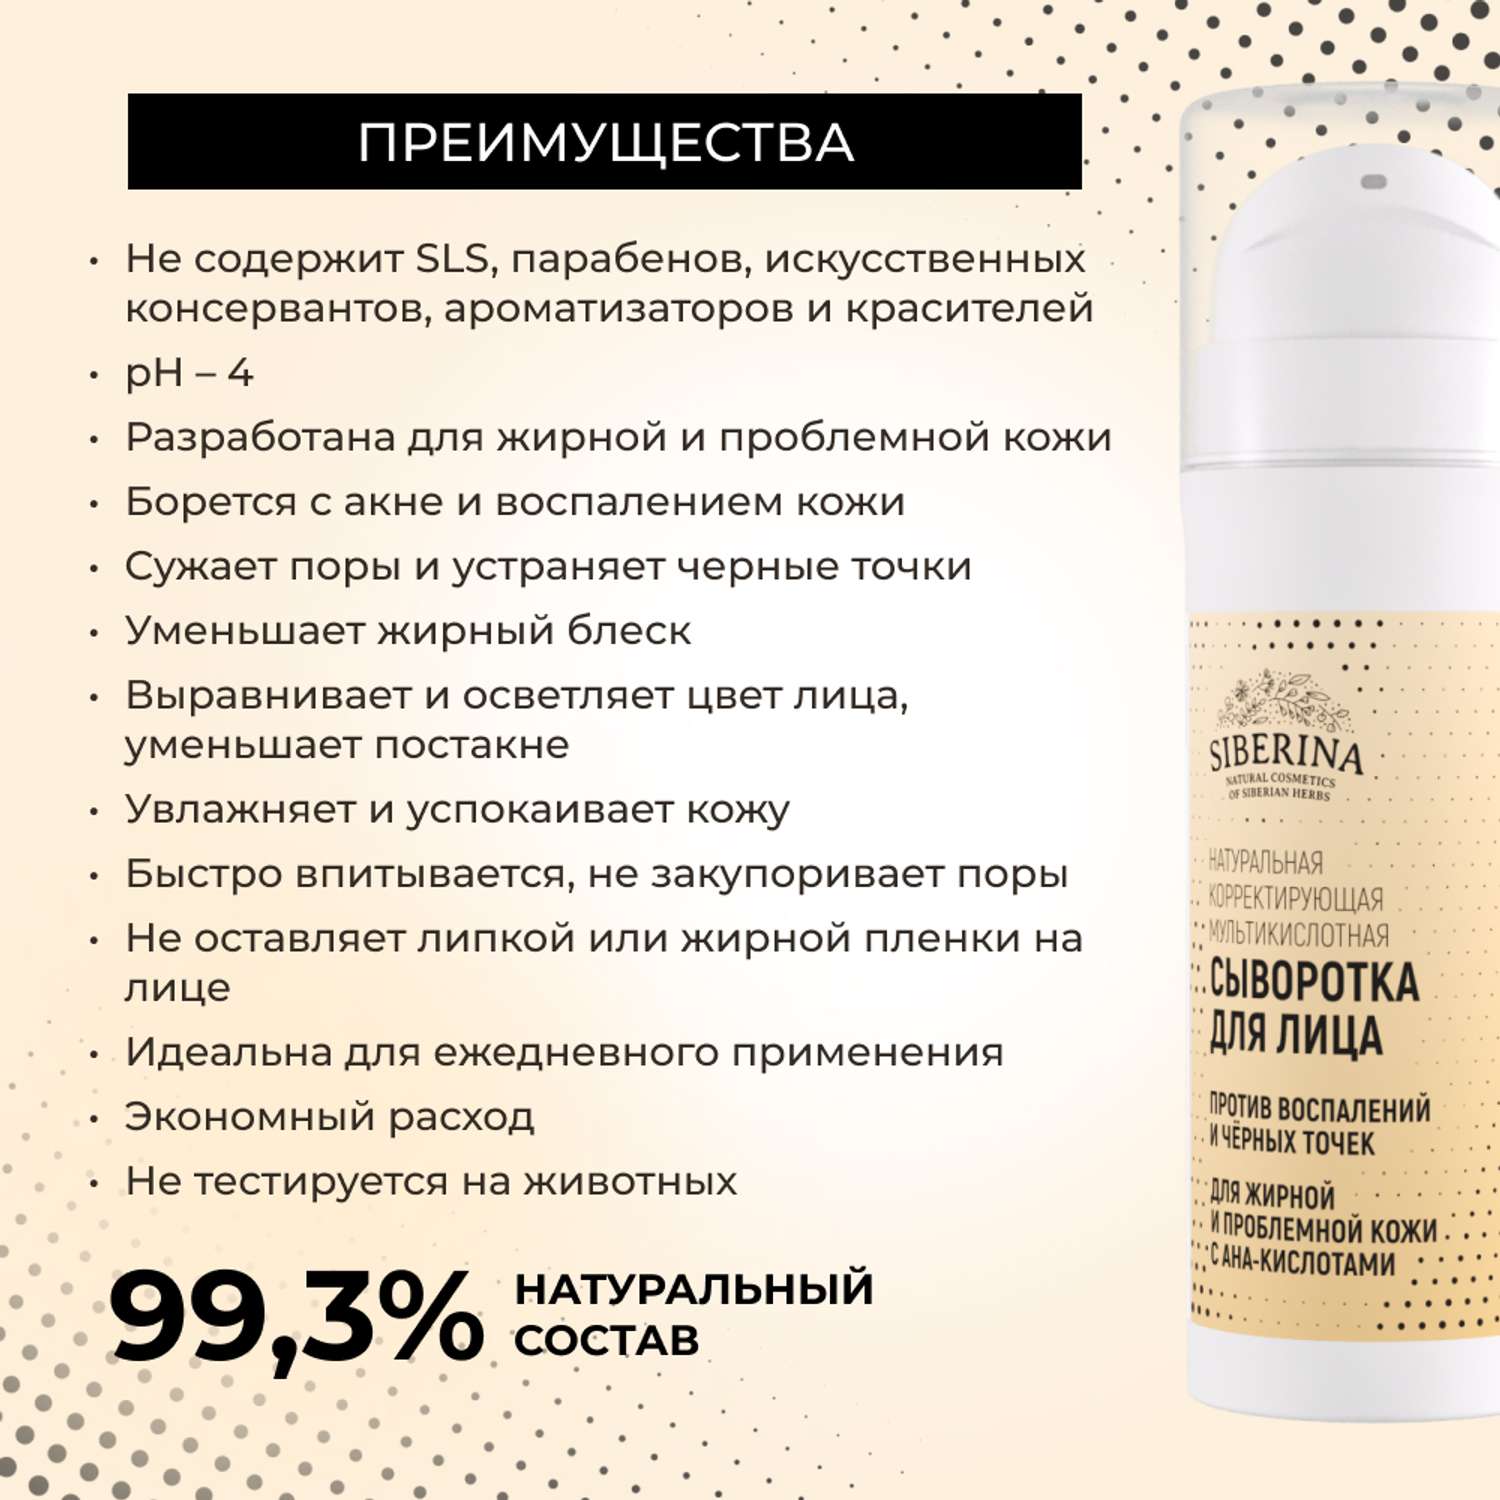 Сыворотка для лица Siberina натуральная для жирной и проблемной кожи c AHA-кислотами 30 мл - фото 3